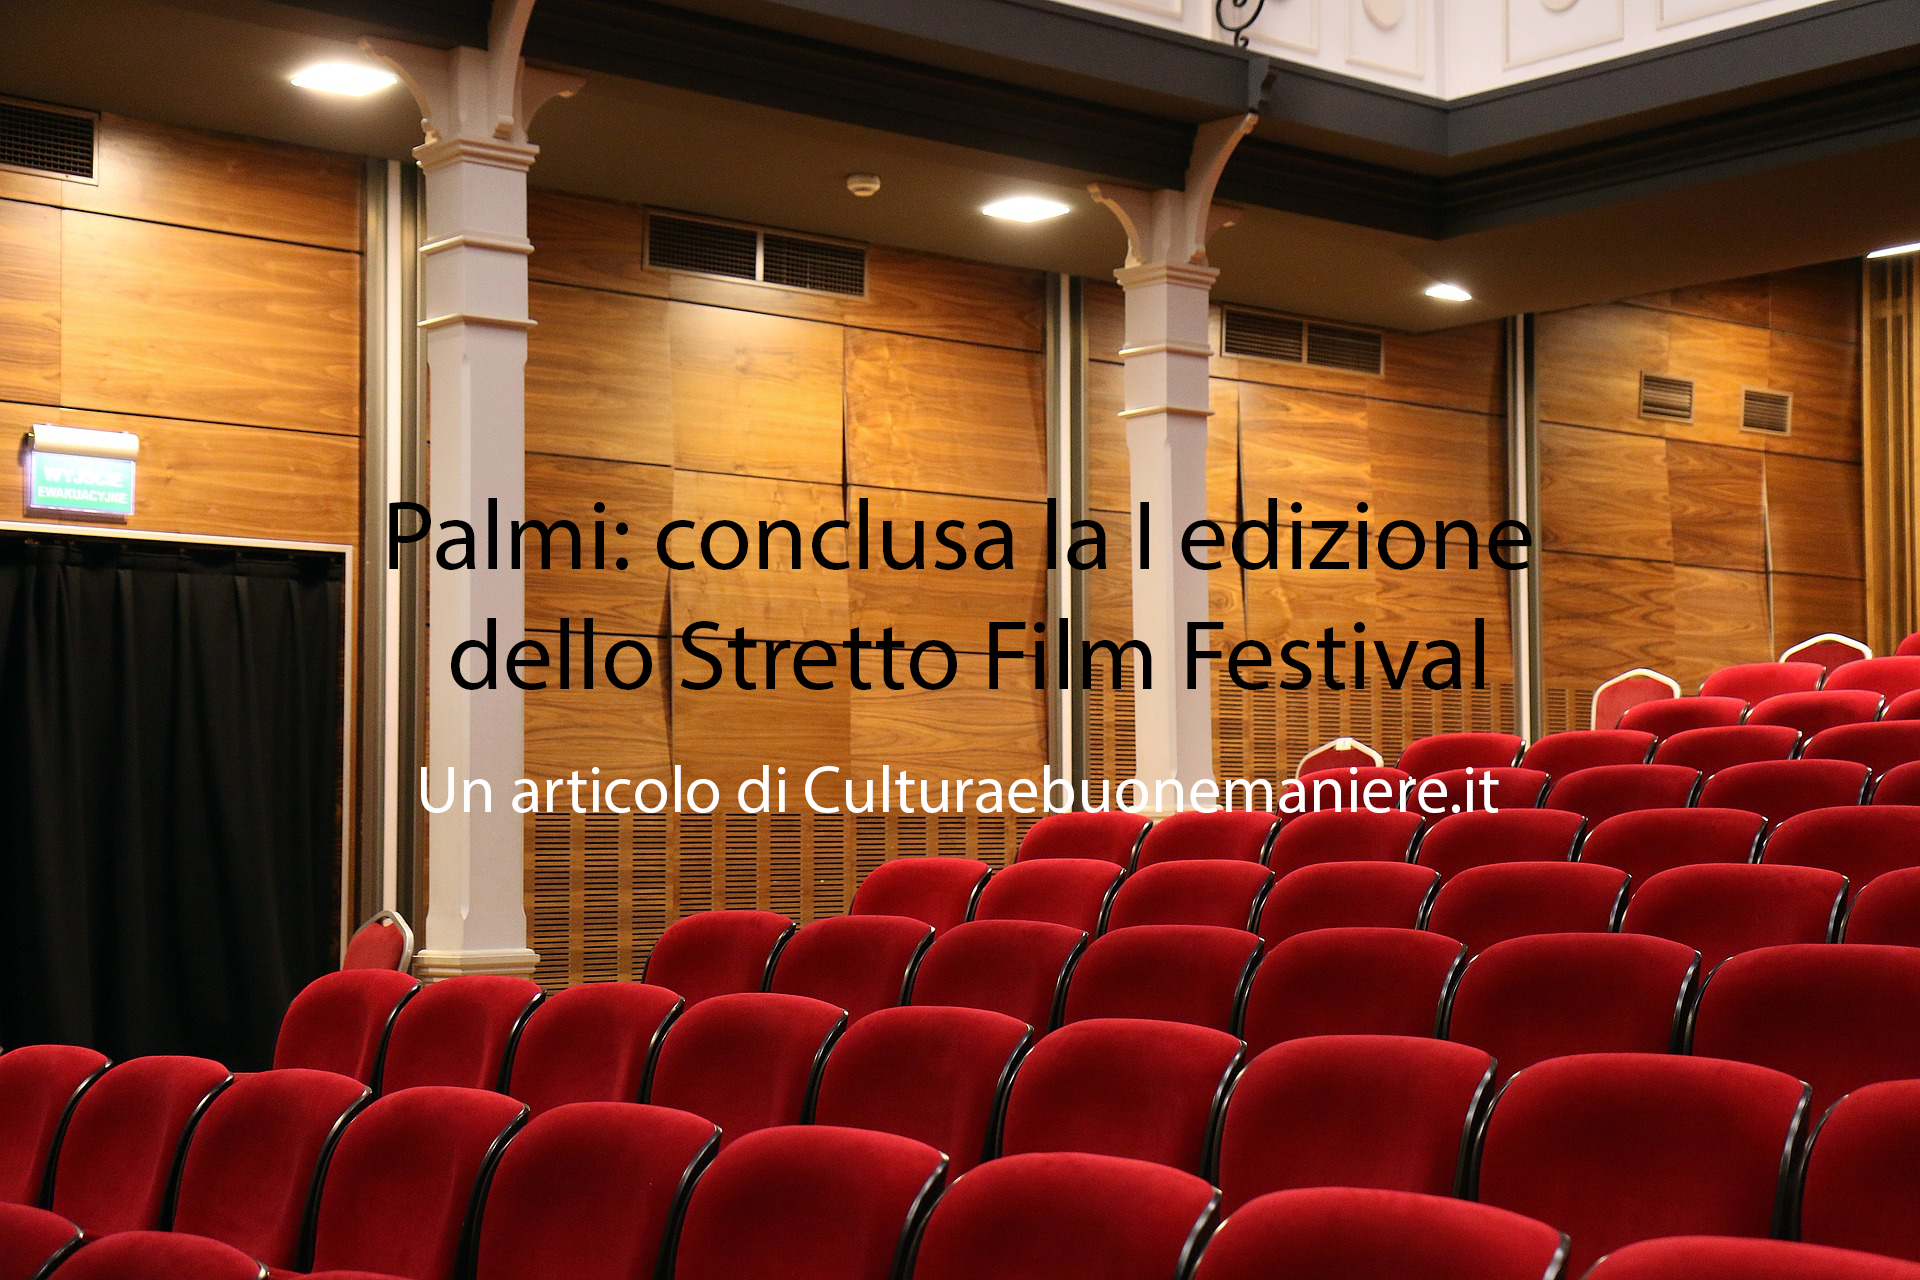 Palmi: conclusa la I edizione dello Stretto Film Festival